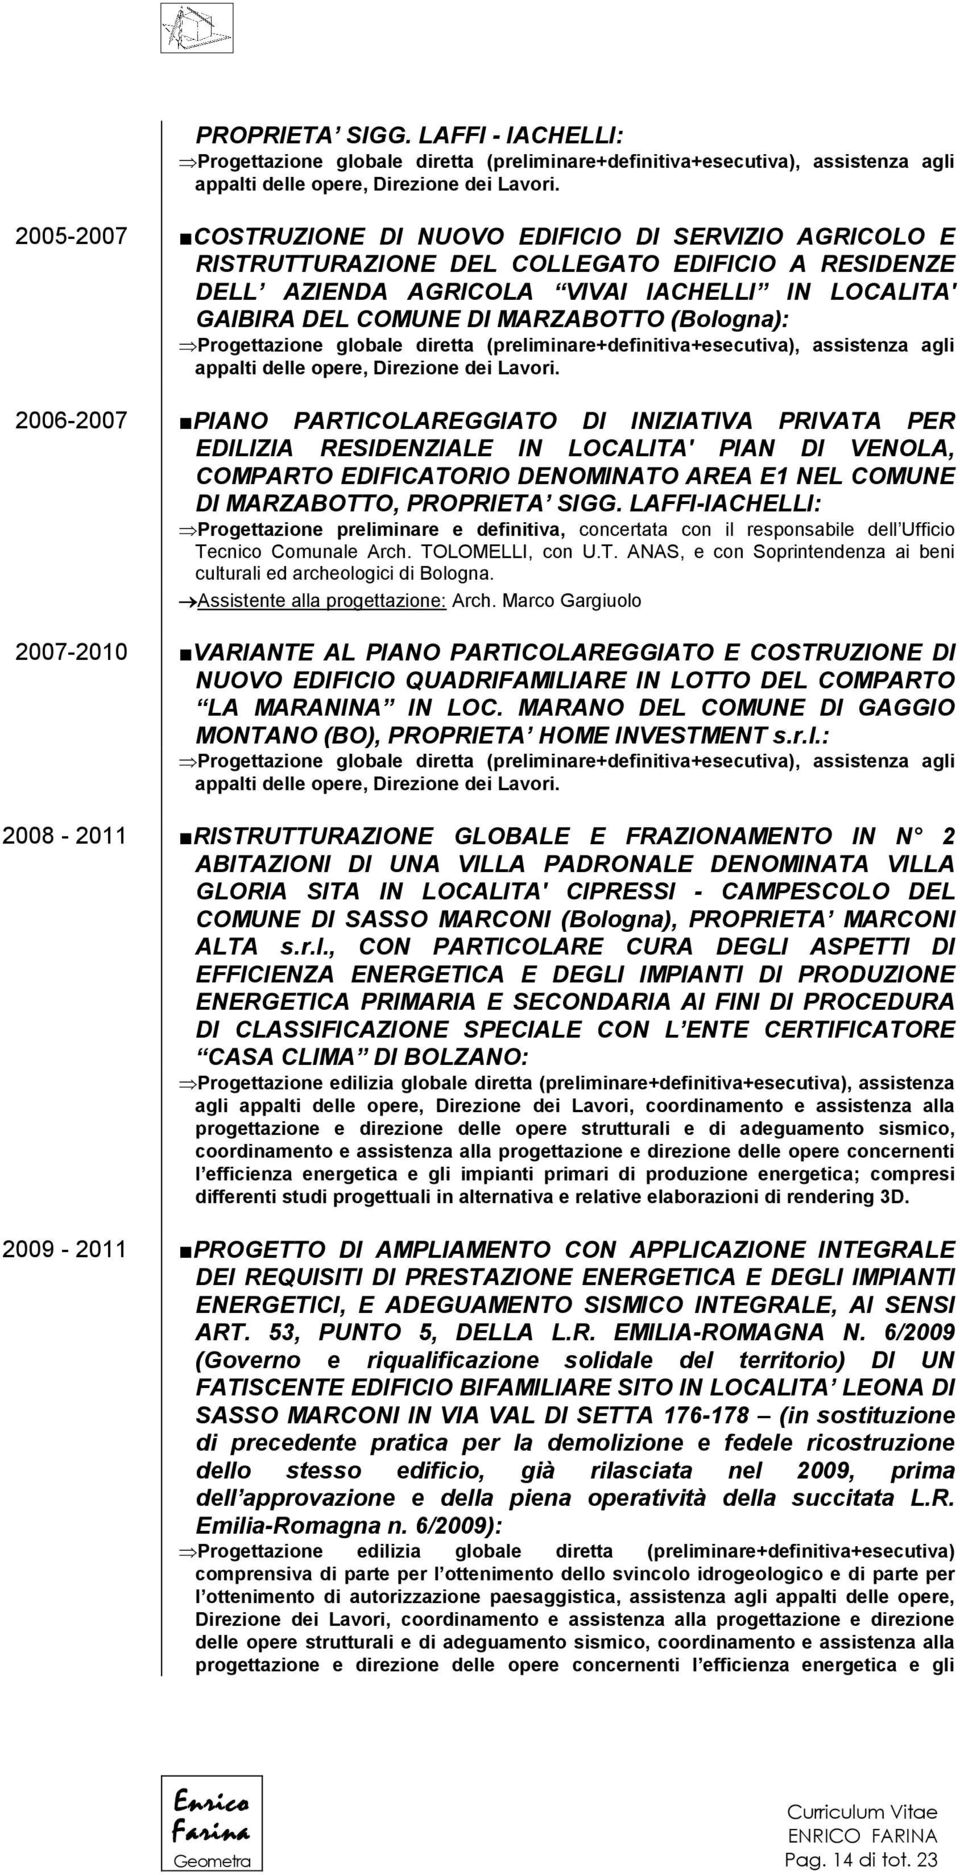 COMUNE DI MARZABOTTO (Bologna): 2006-2007 PIANO PARTICOLAREGGIATO DI INIZIATIVA PRIVATA PER EDILIZIA RESIDENZIALE IN LOCALITA' PIAN DI VENOLA, COMPARTO EDIFICATORIO DENOMINATO AREA E1 NEL COMUNE DI